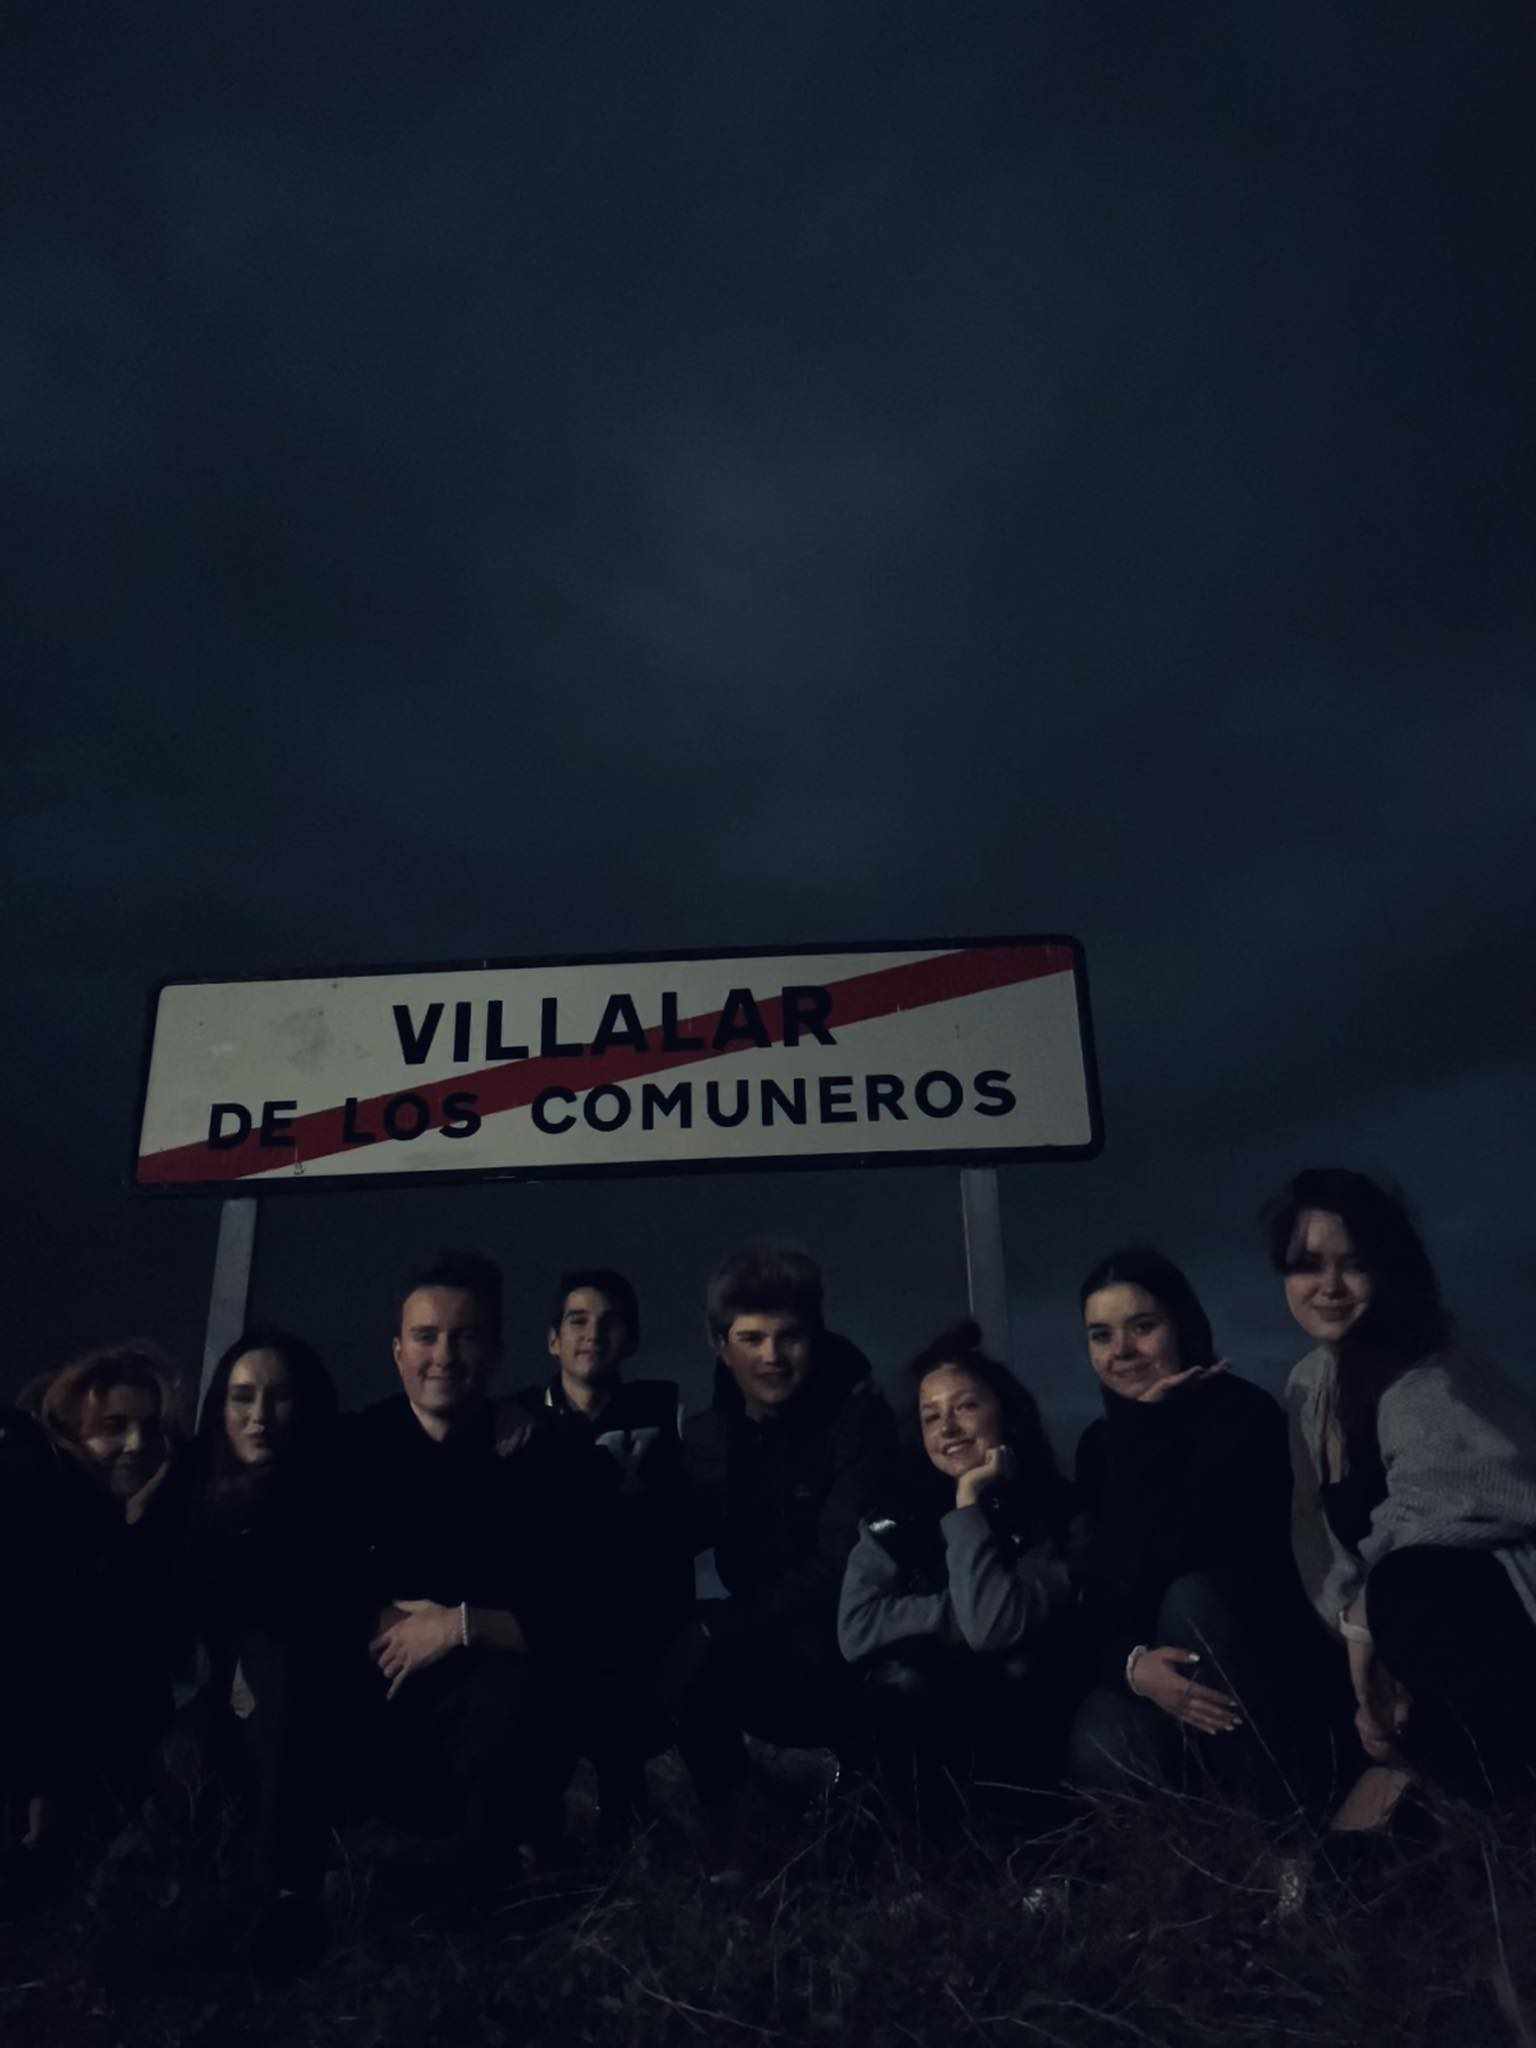 Youth Exchange Blog: SOLIDEU in Villalar de los Comuneros, Spain, by Villem pilt